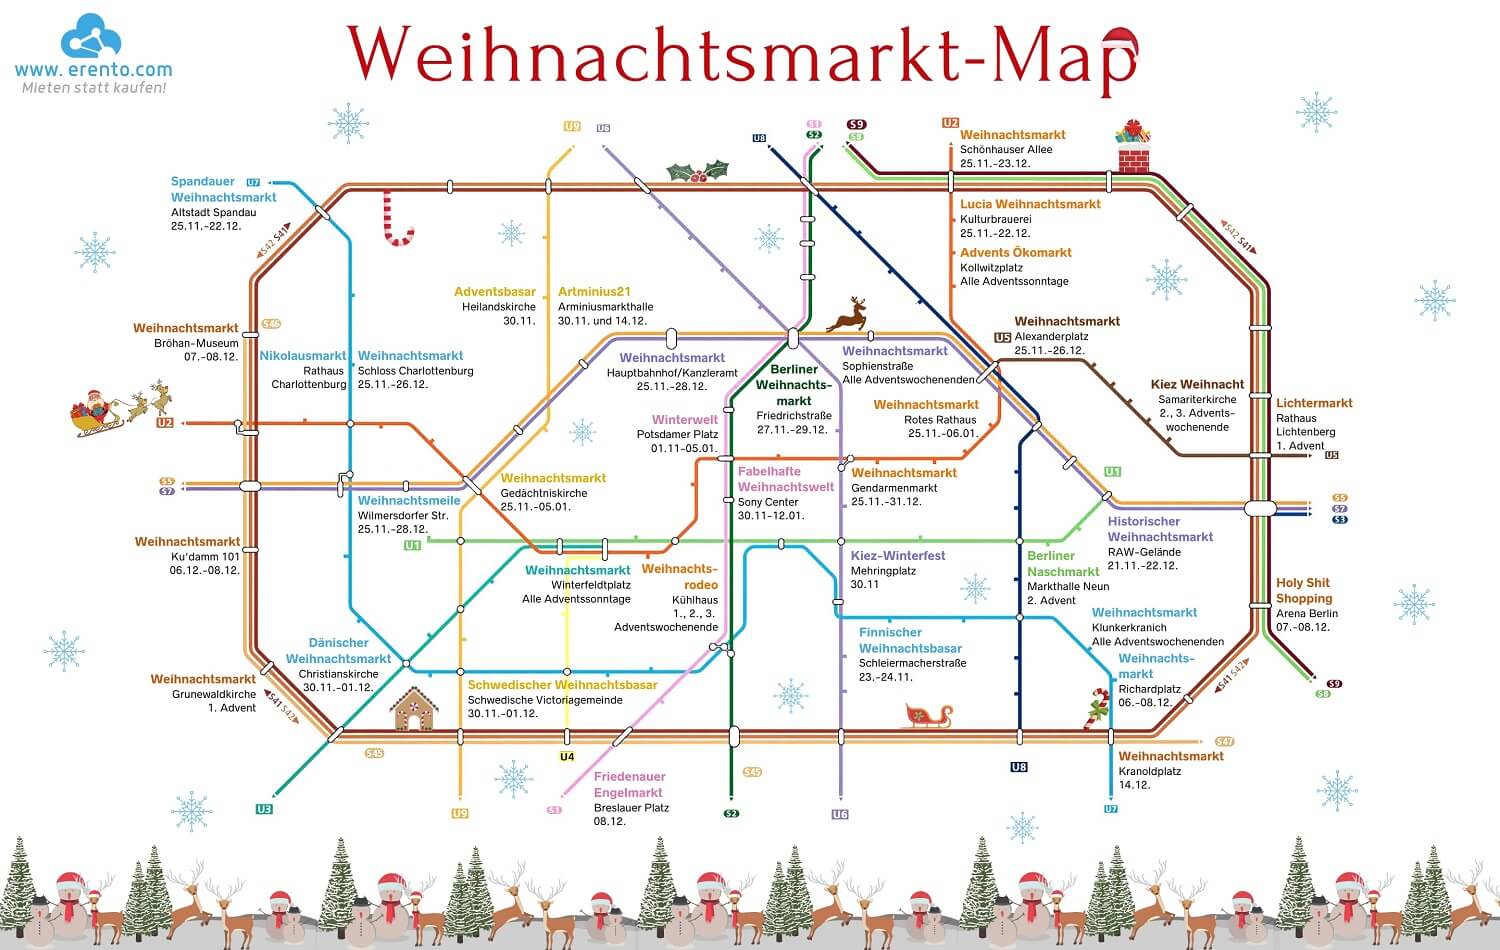 Die Grosse Erento Weihnachtsmarkt Karte 2019 Fur Berlin